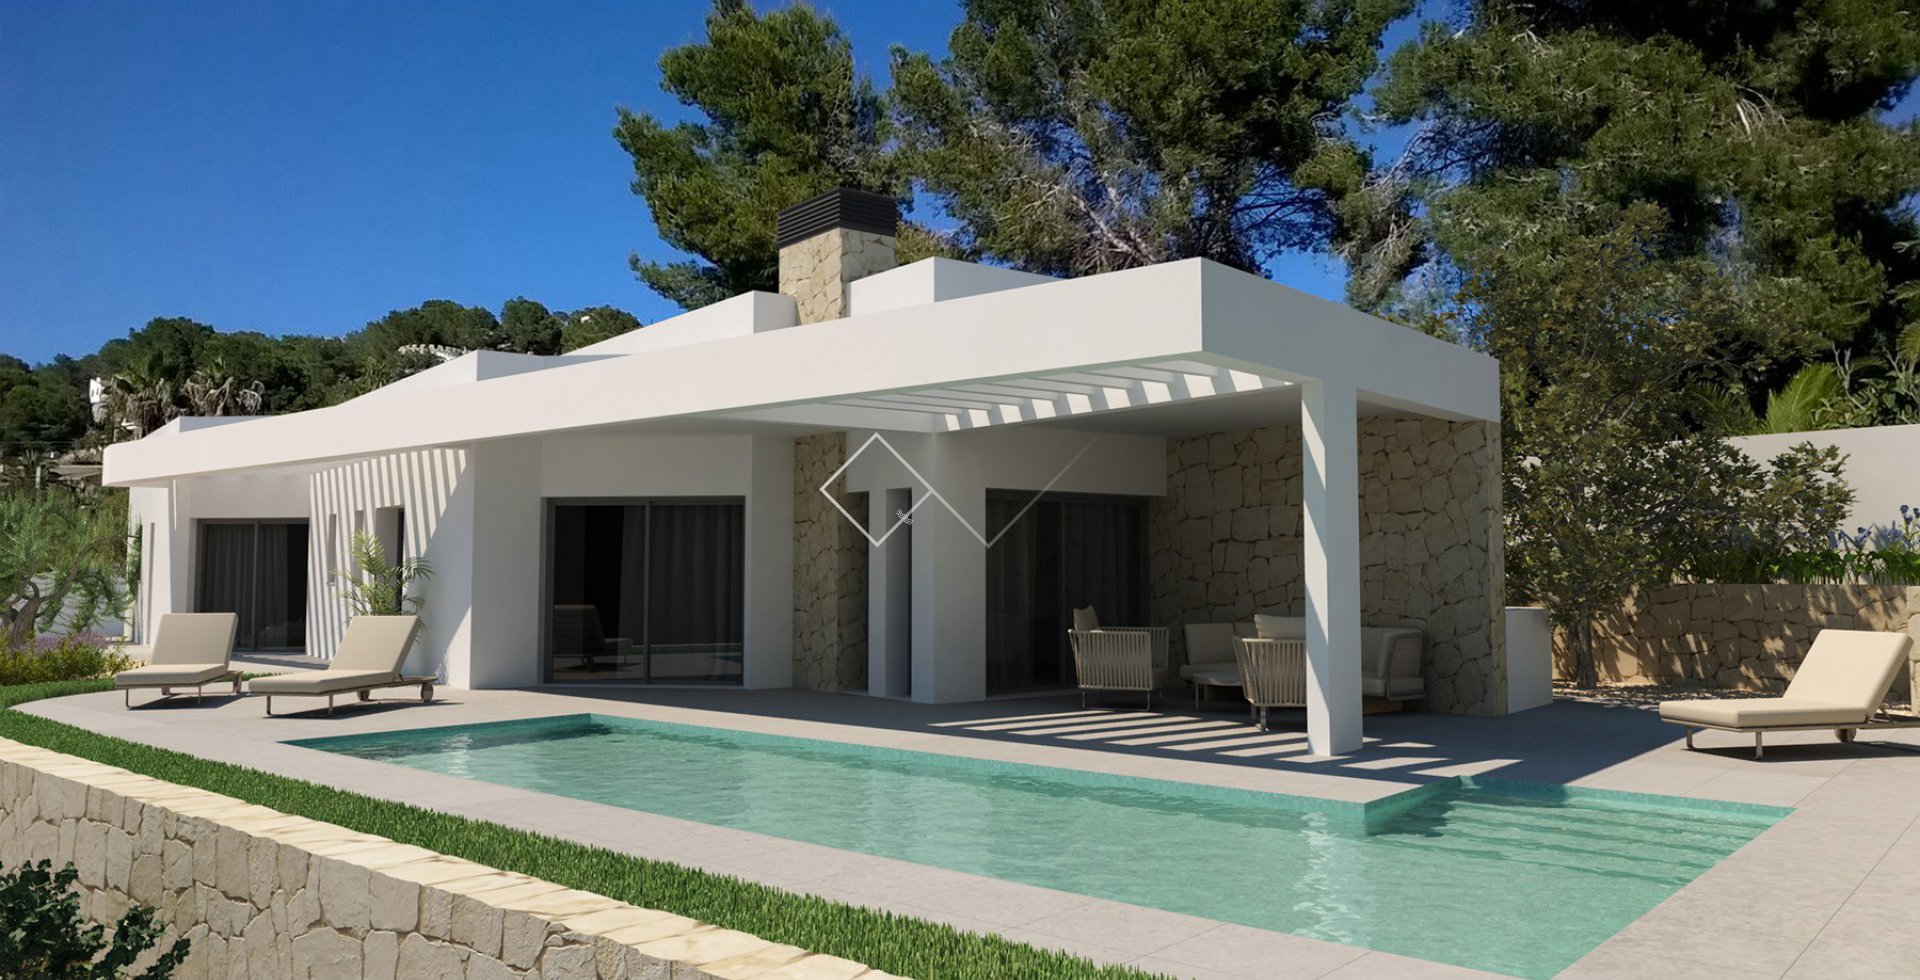 Moderne Villa zu verkaufen in der Nahe von Moraira